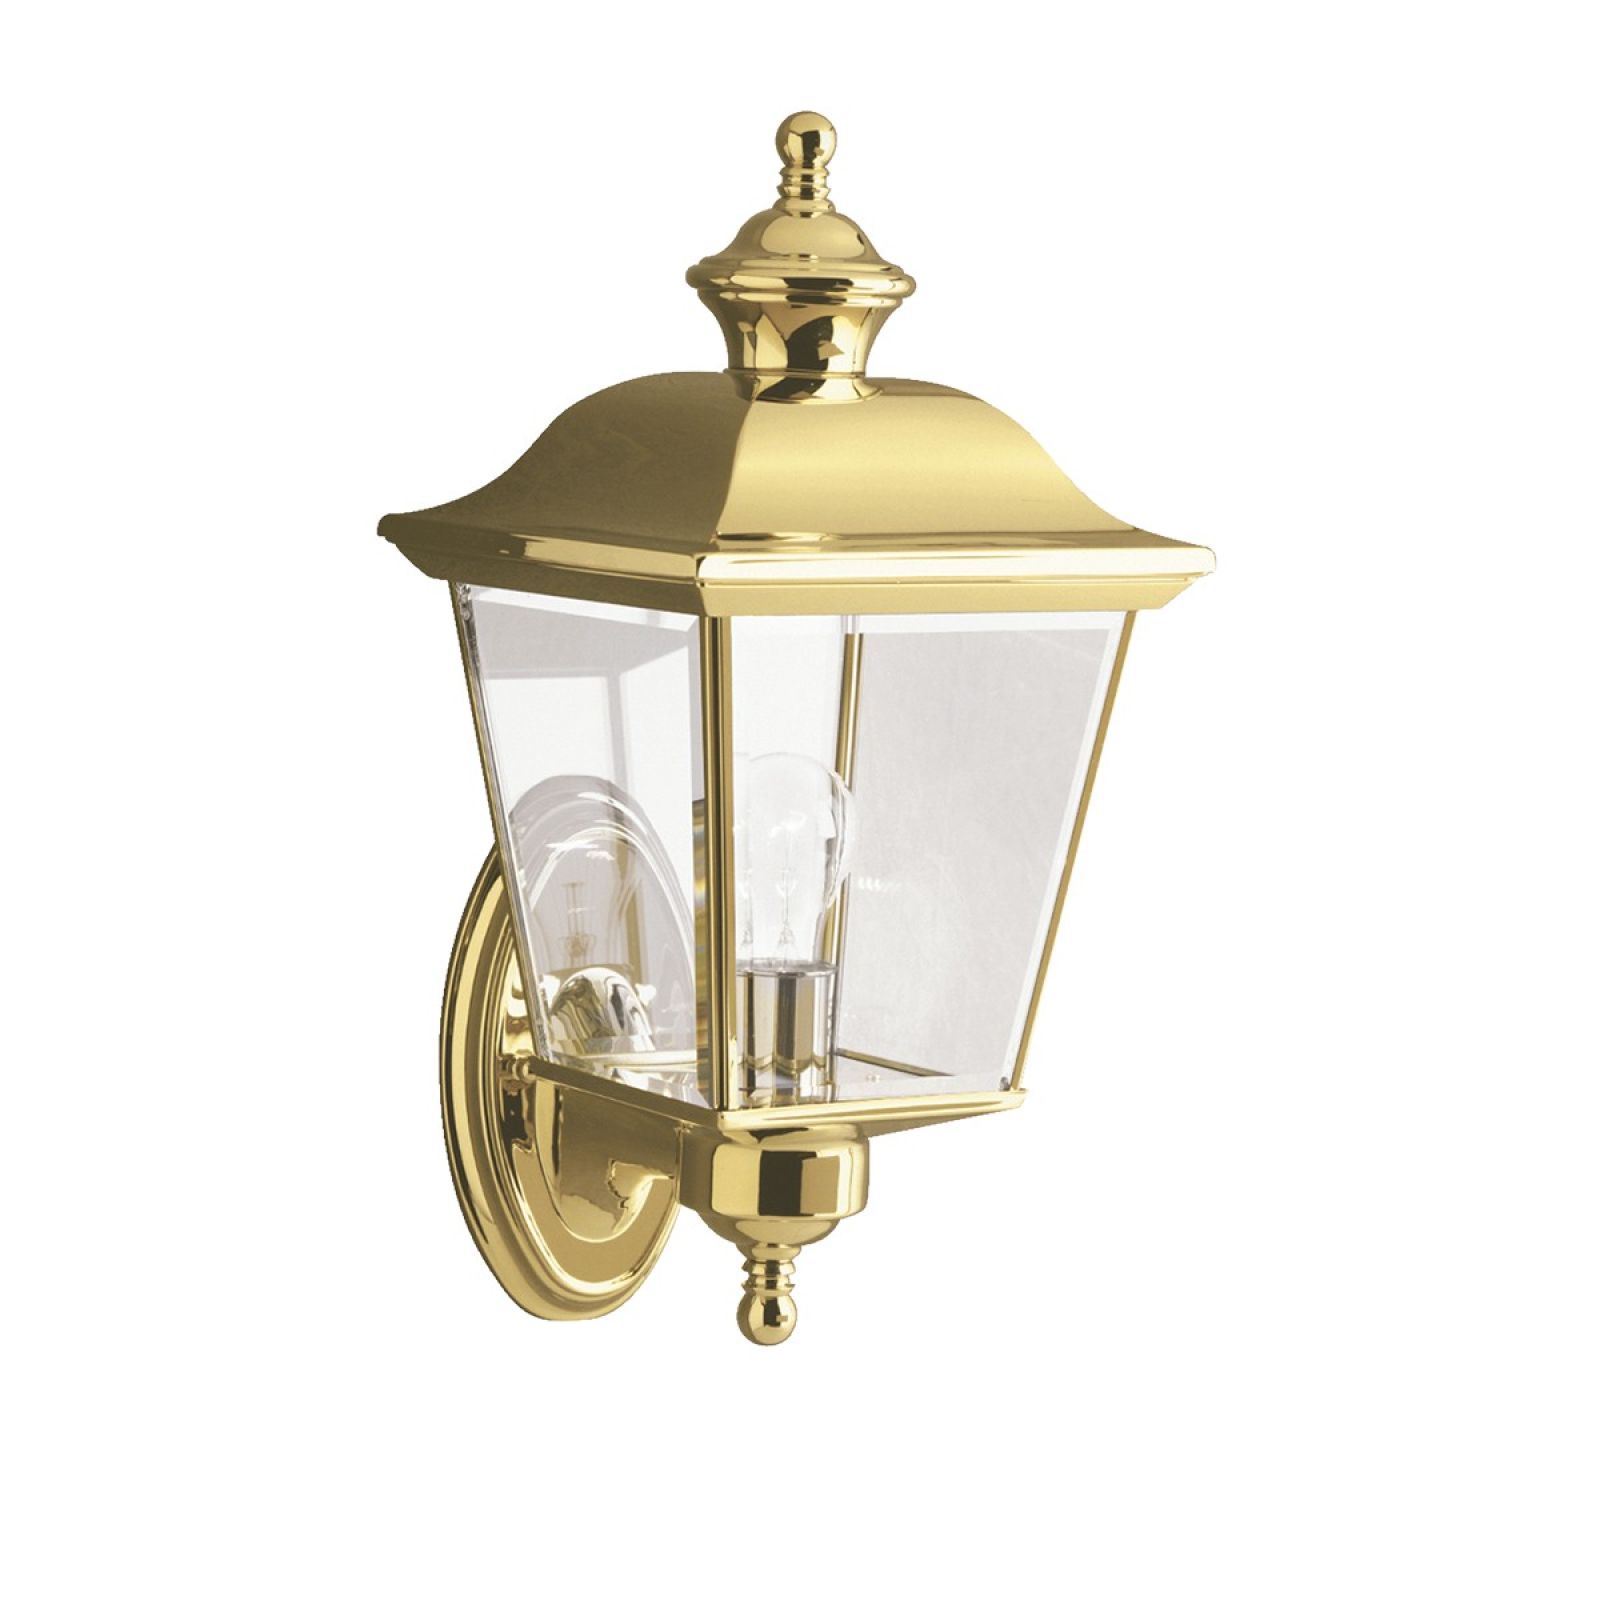 Bay medium wall lantern in polished brass